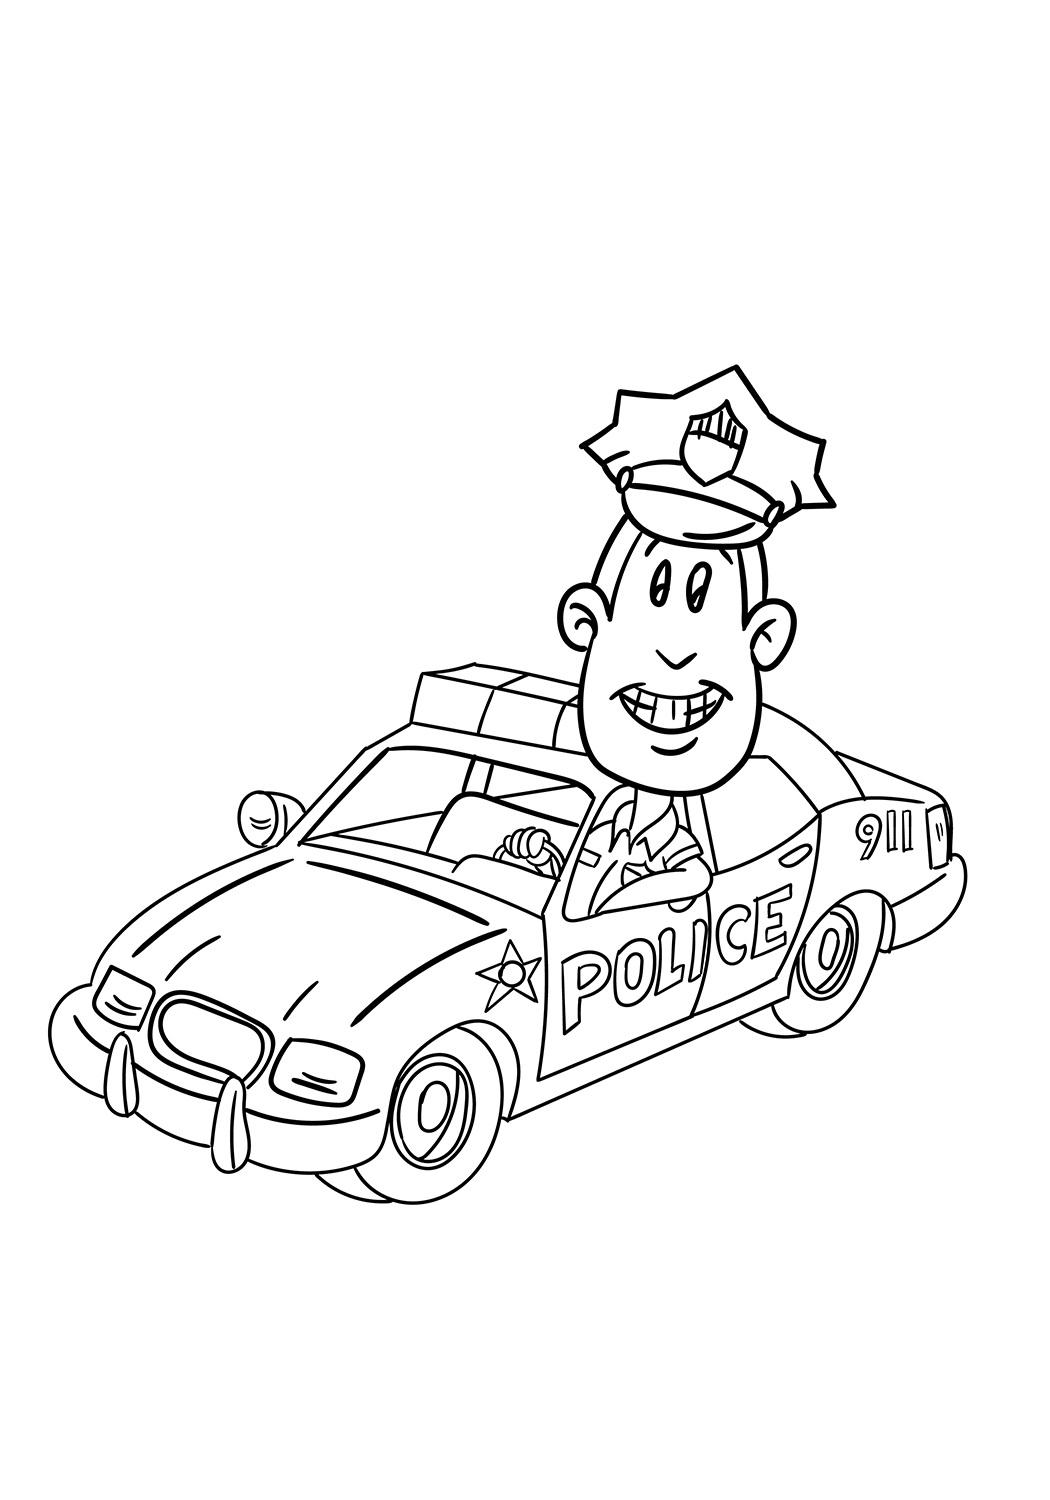 De politieagent in de auto